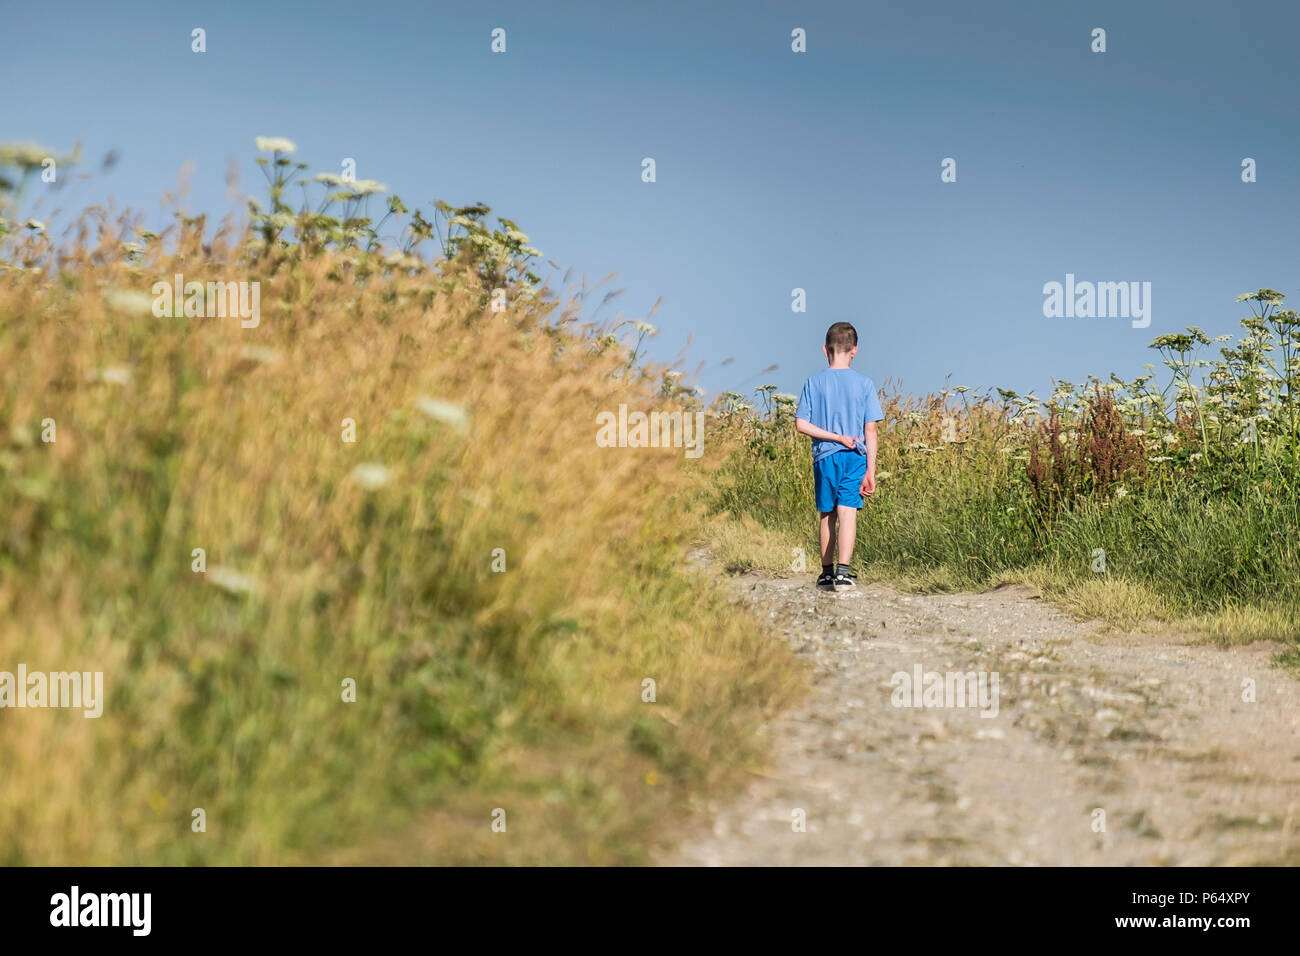 Un jeune garçon marcher seule le long d'une piste dans un champ. Banque D'Images